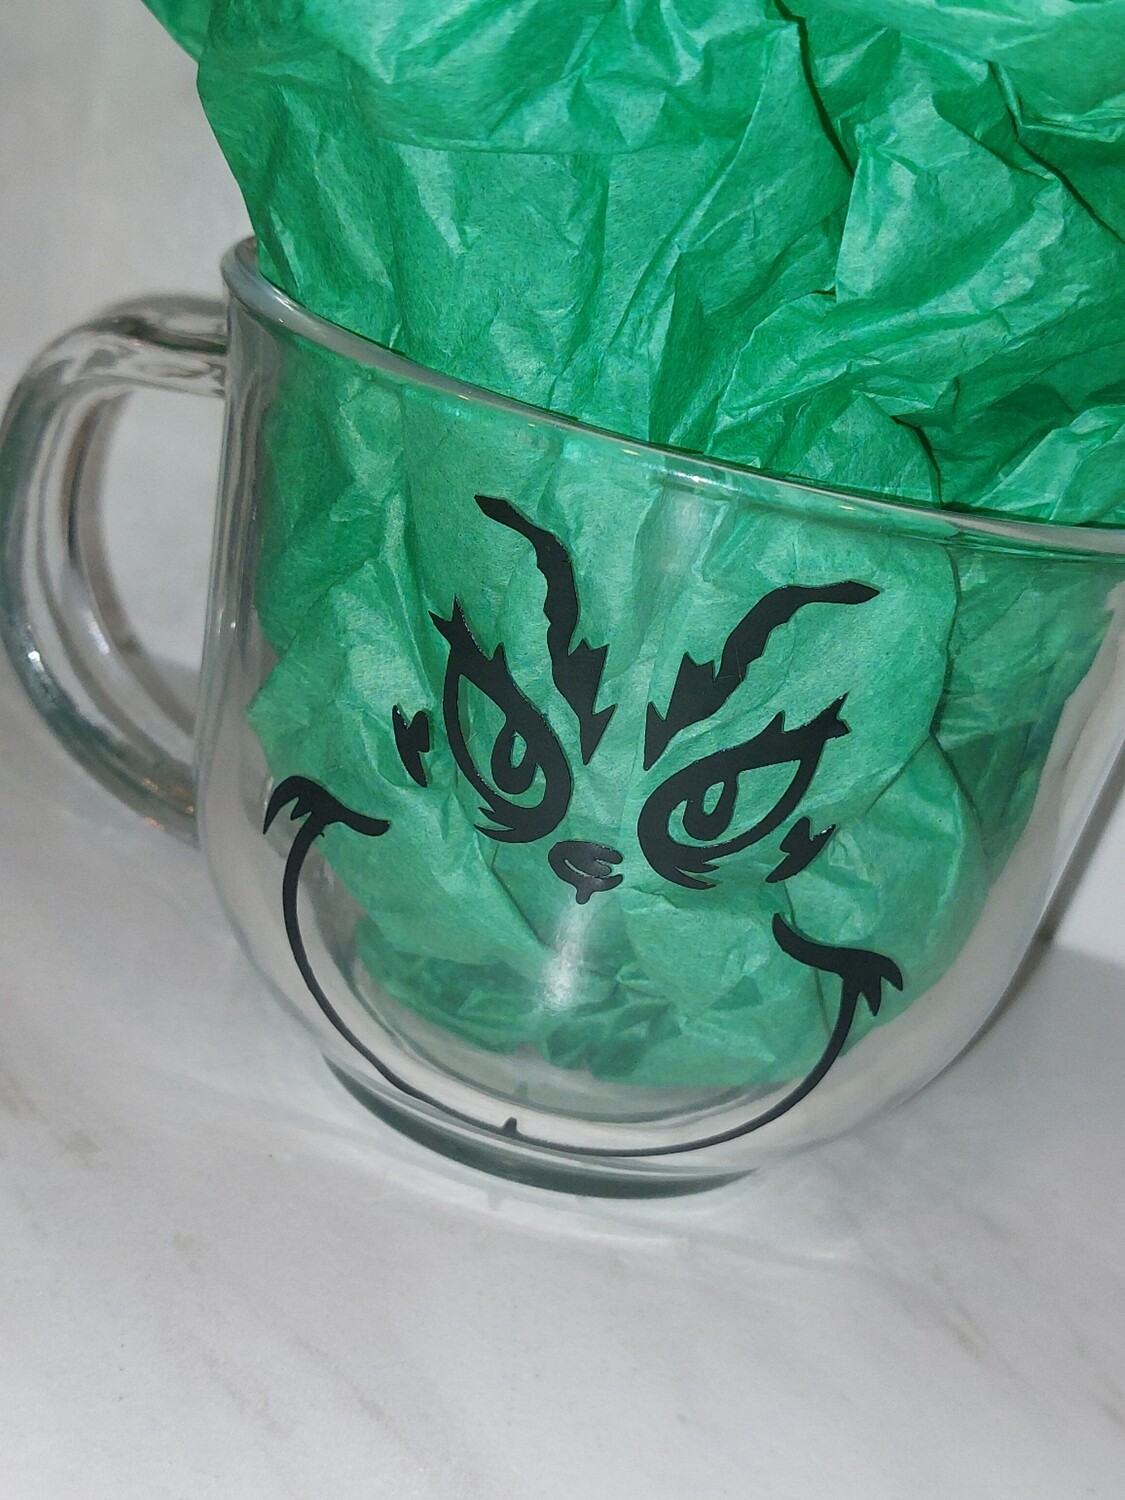 Grinch coffee mug